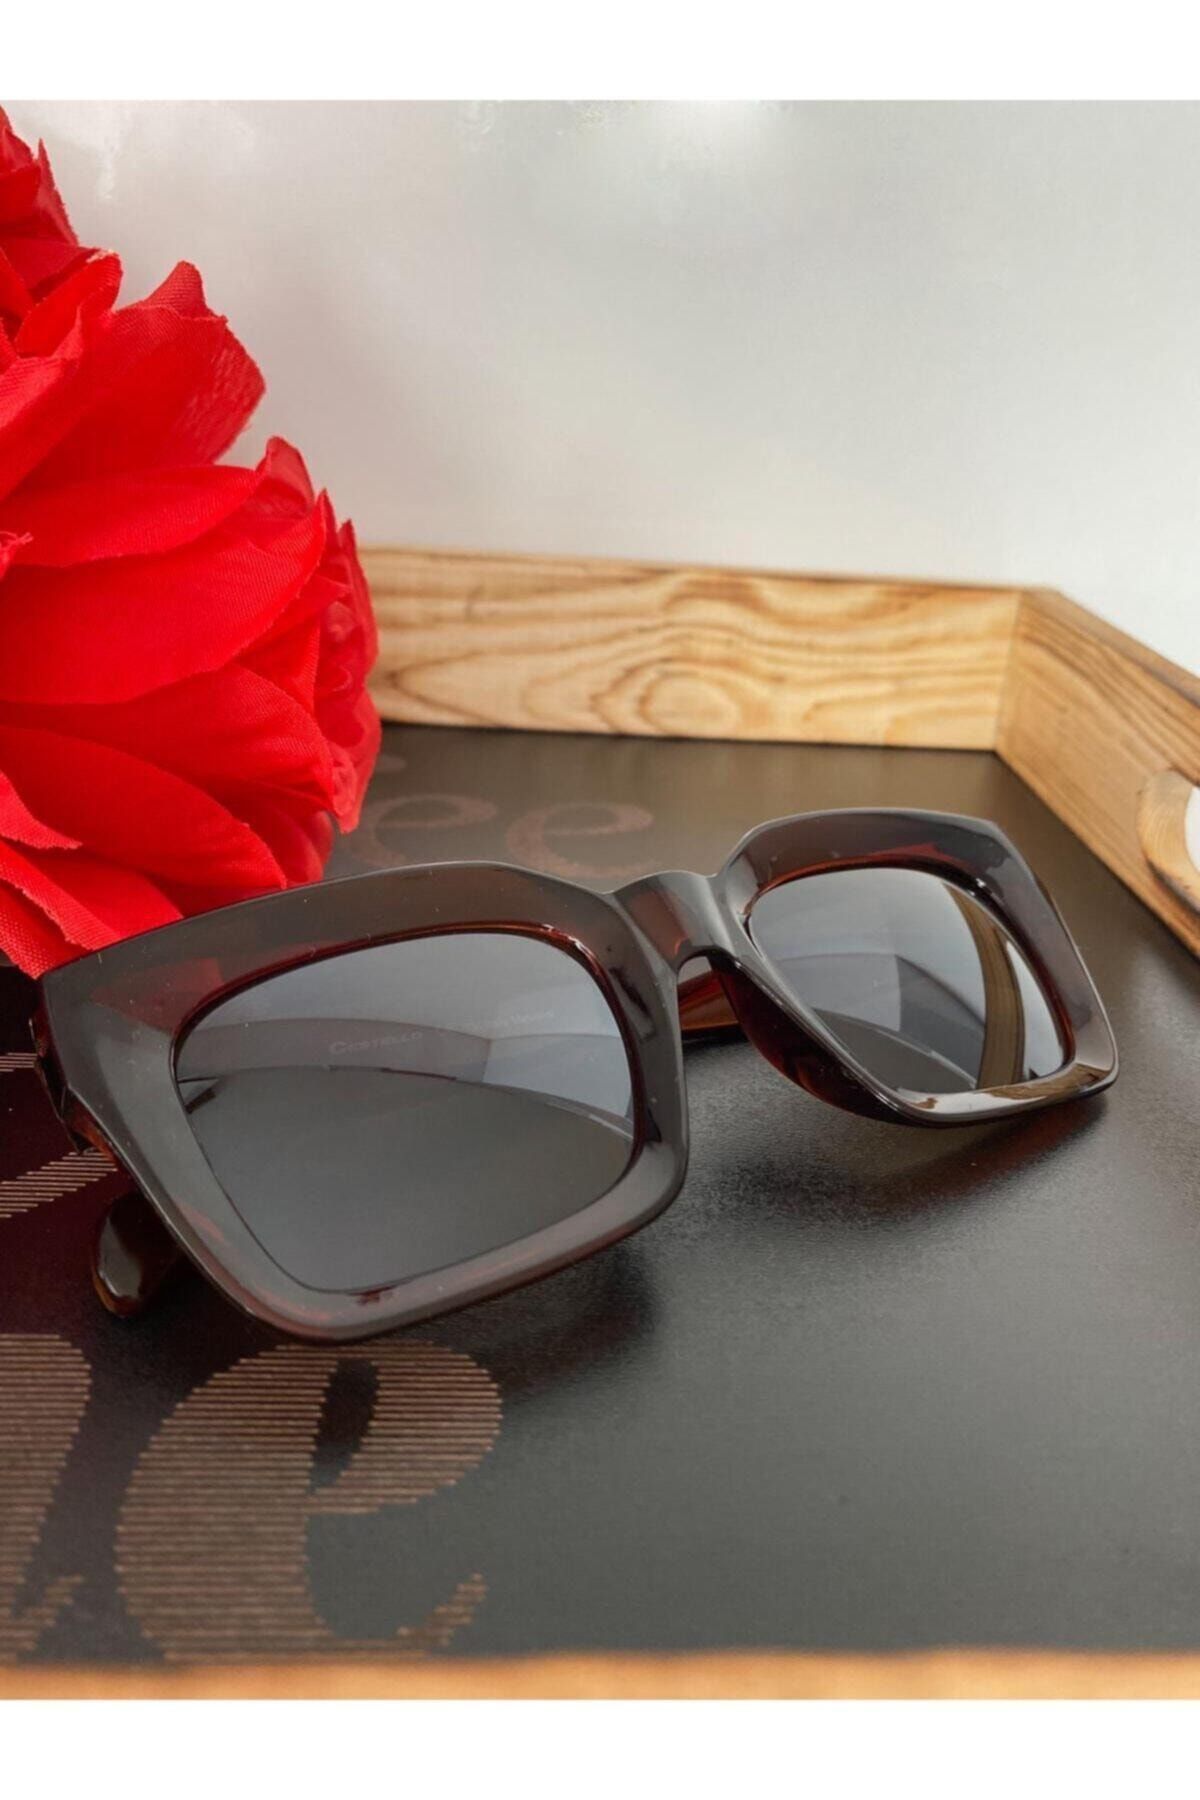 Mathilda Aksesuar Polo55 Mia Kalın Çerçeveli Tasarım Gözlük Kahverengi Çerçeve Kahverengi Cam